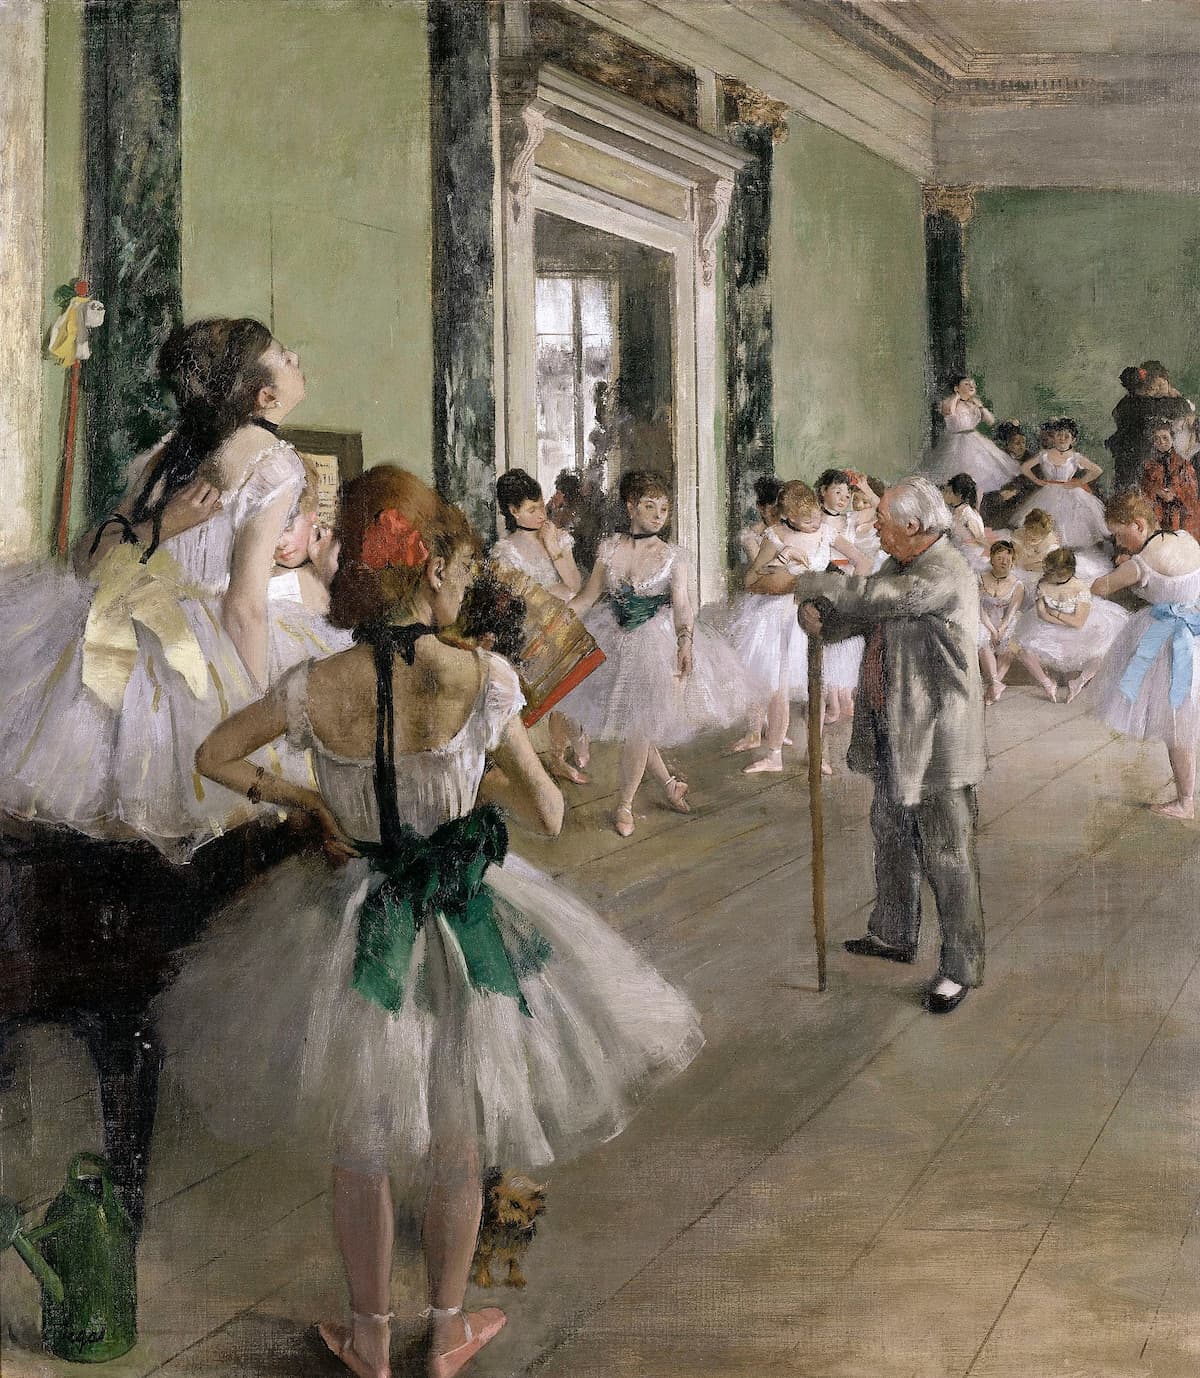 Edgar Degas: “La classe de danse"